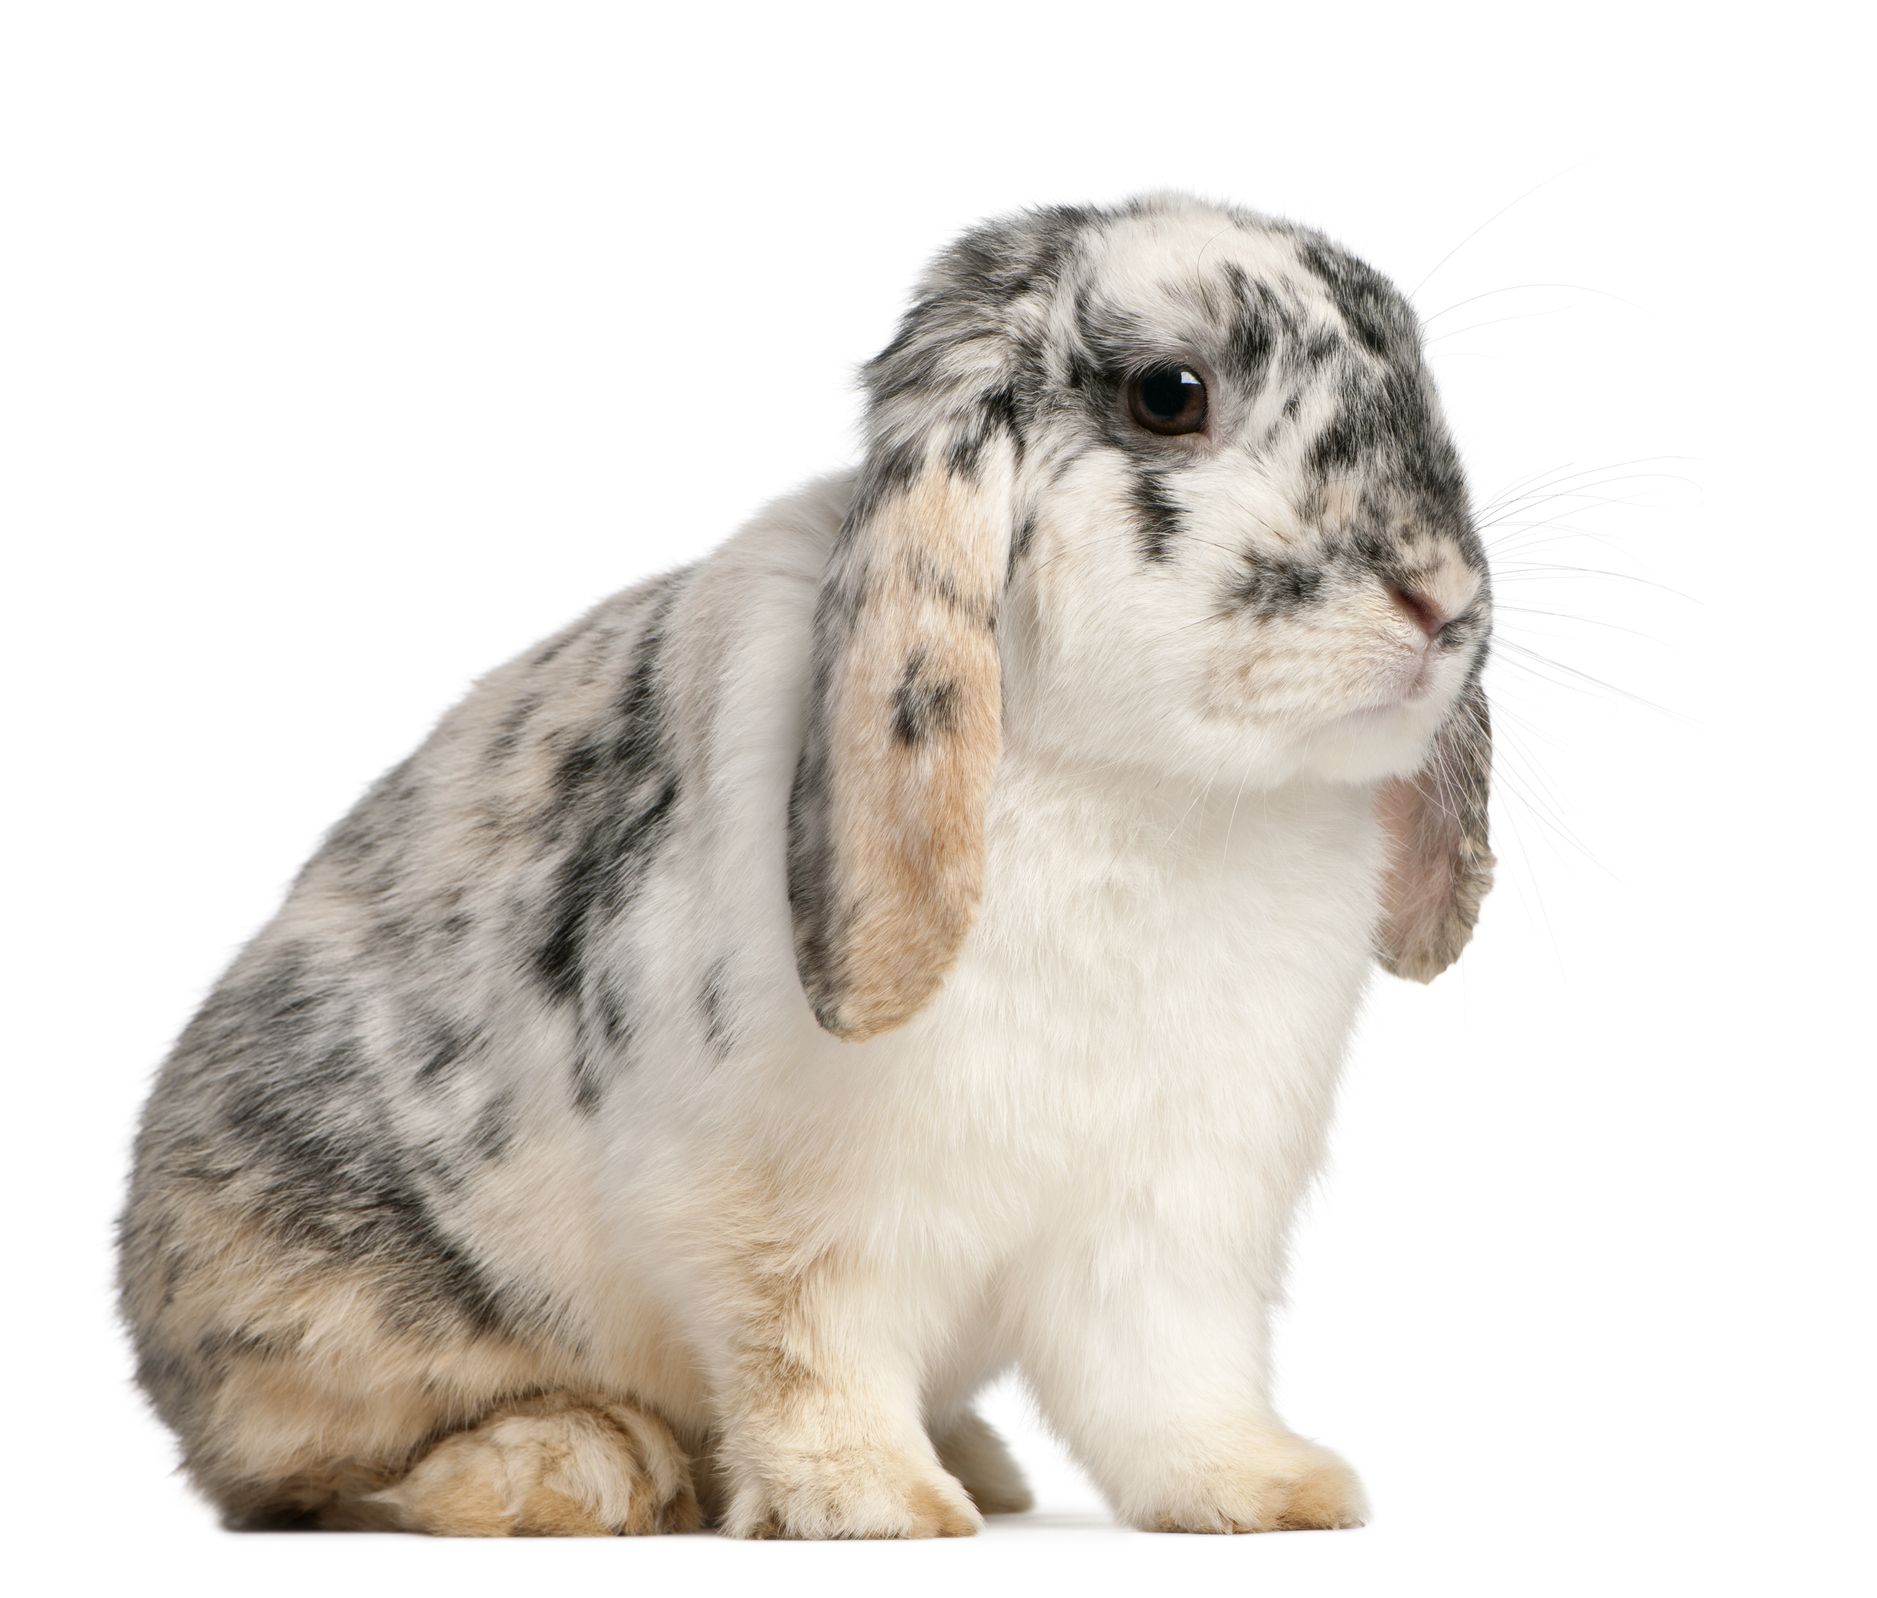 15 Types Of Pet Rabbits Having Rabbits As Pets